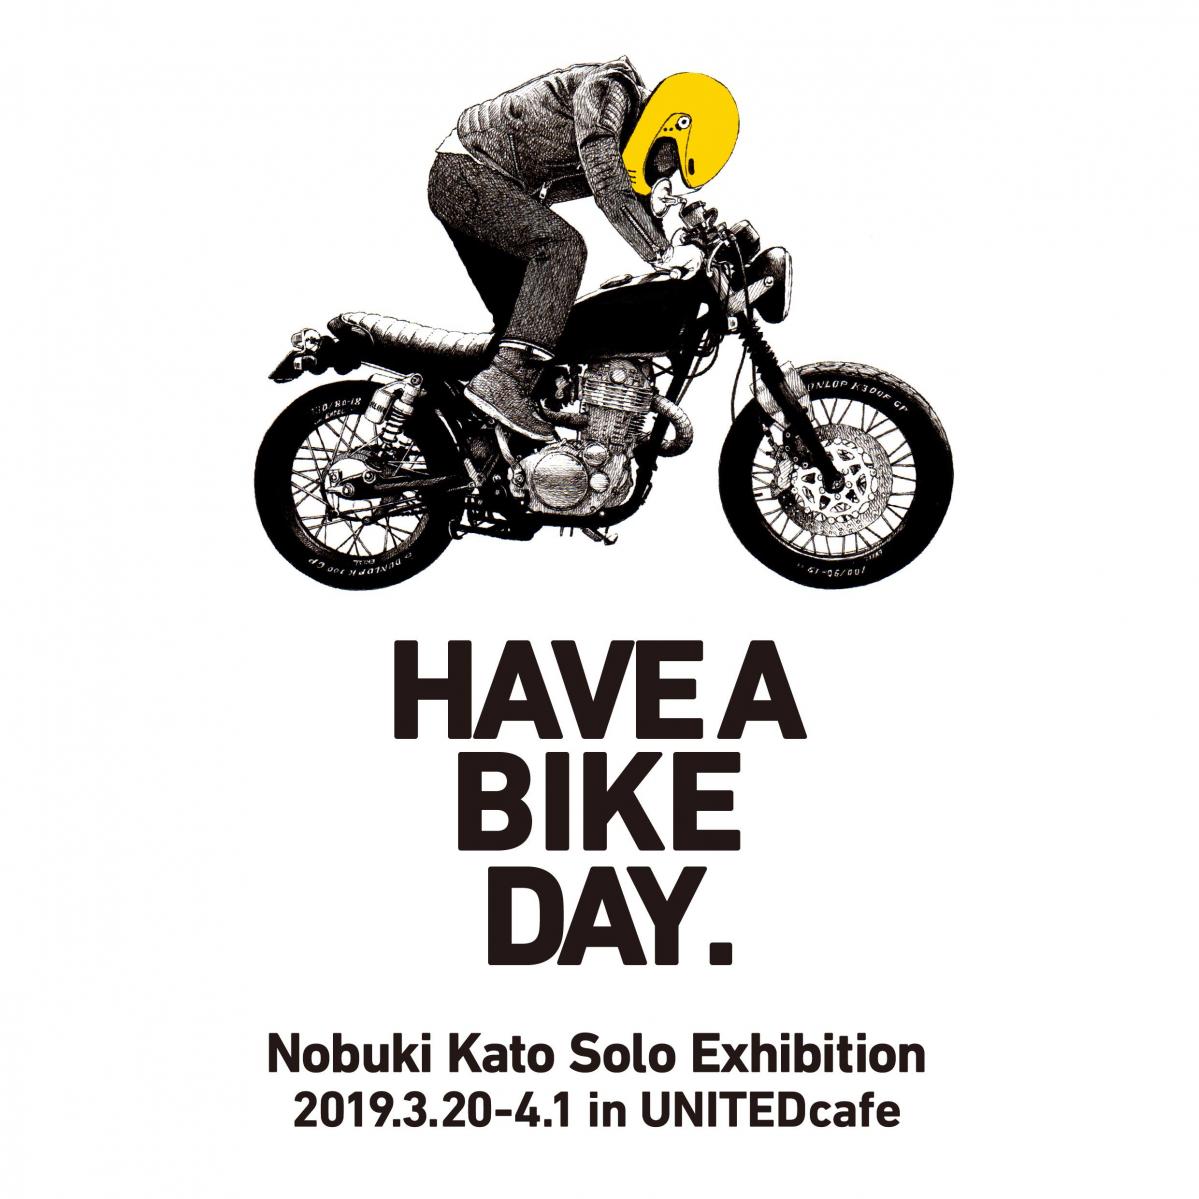 イラストで楽しむバイクの世界 加藤ノブキの個展 Have A Bike Day が都内カフェで開催 3月日 Motor Fan モーターファン